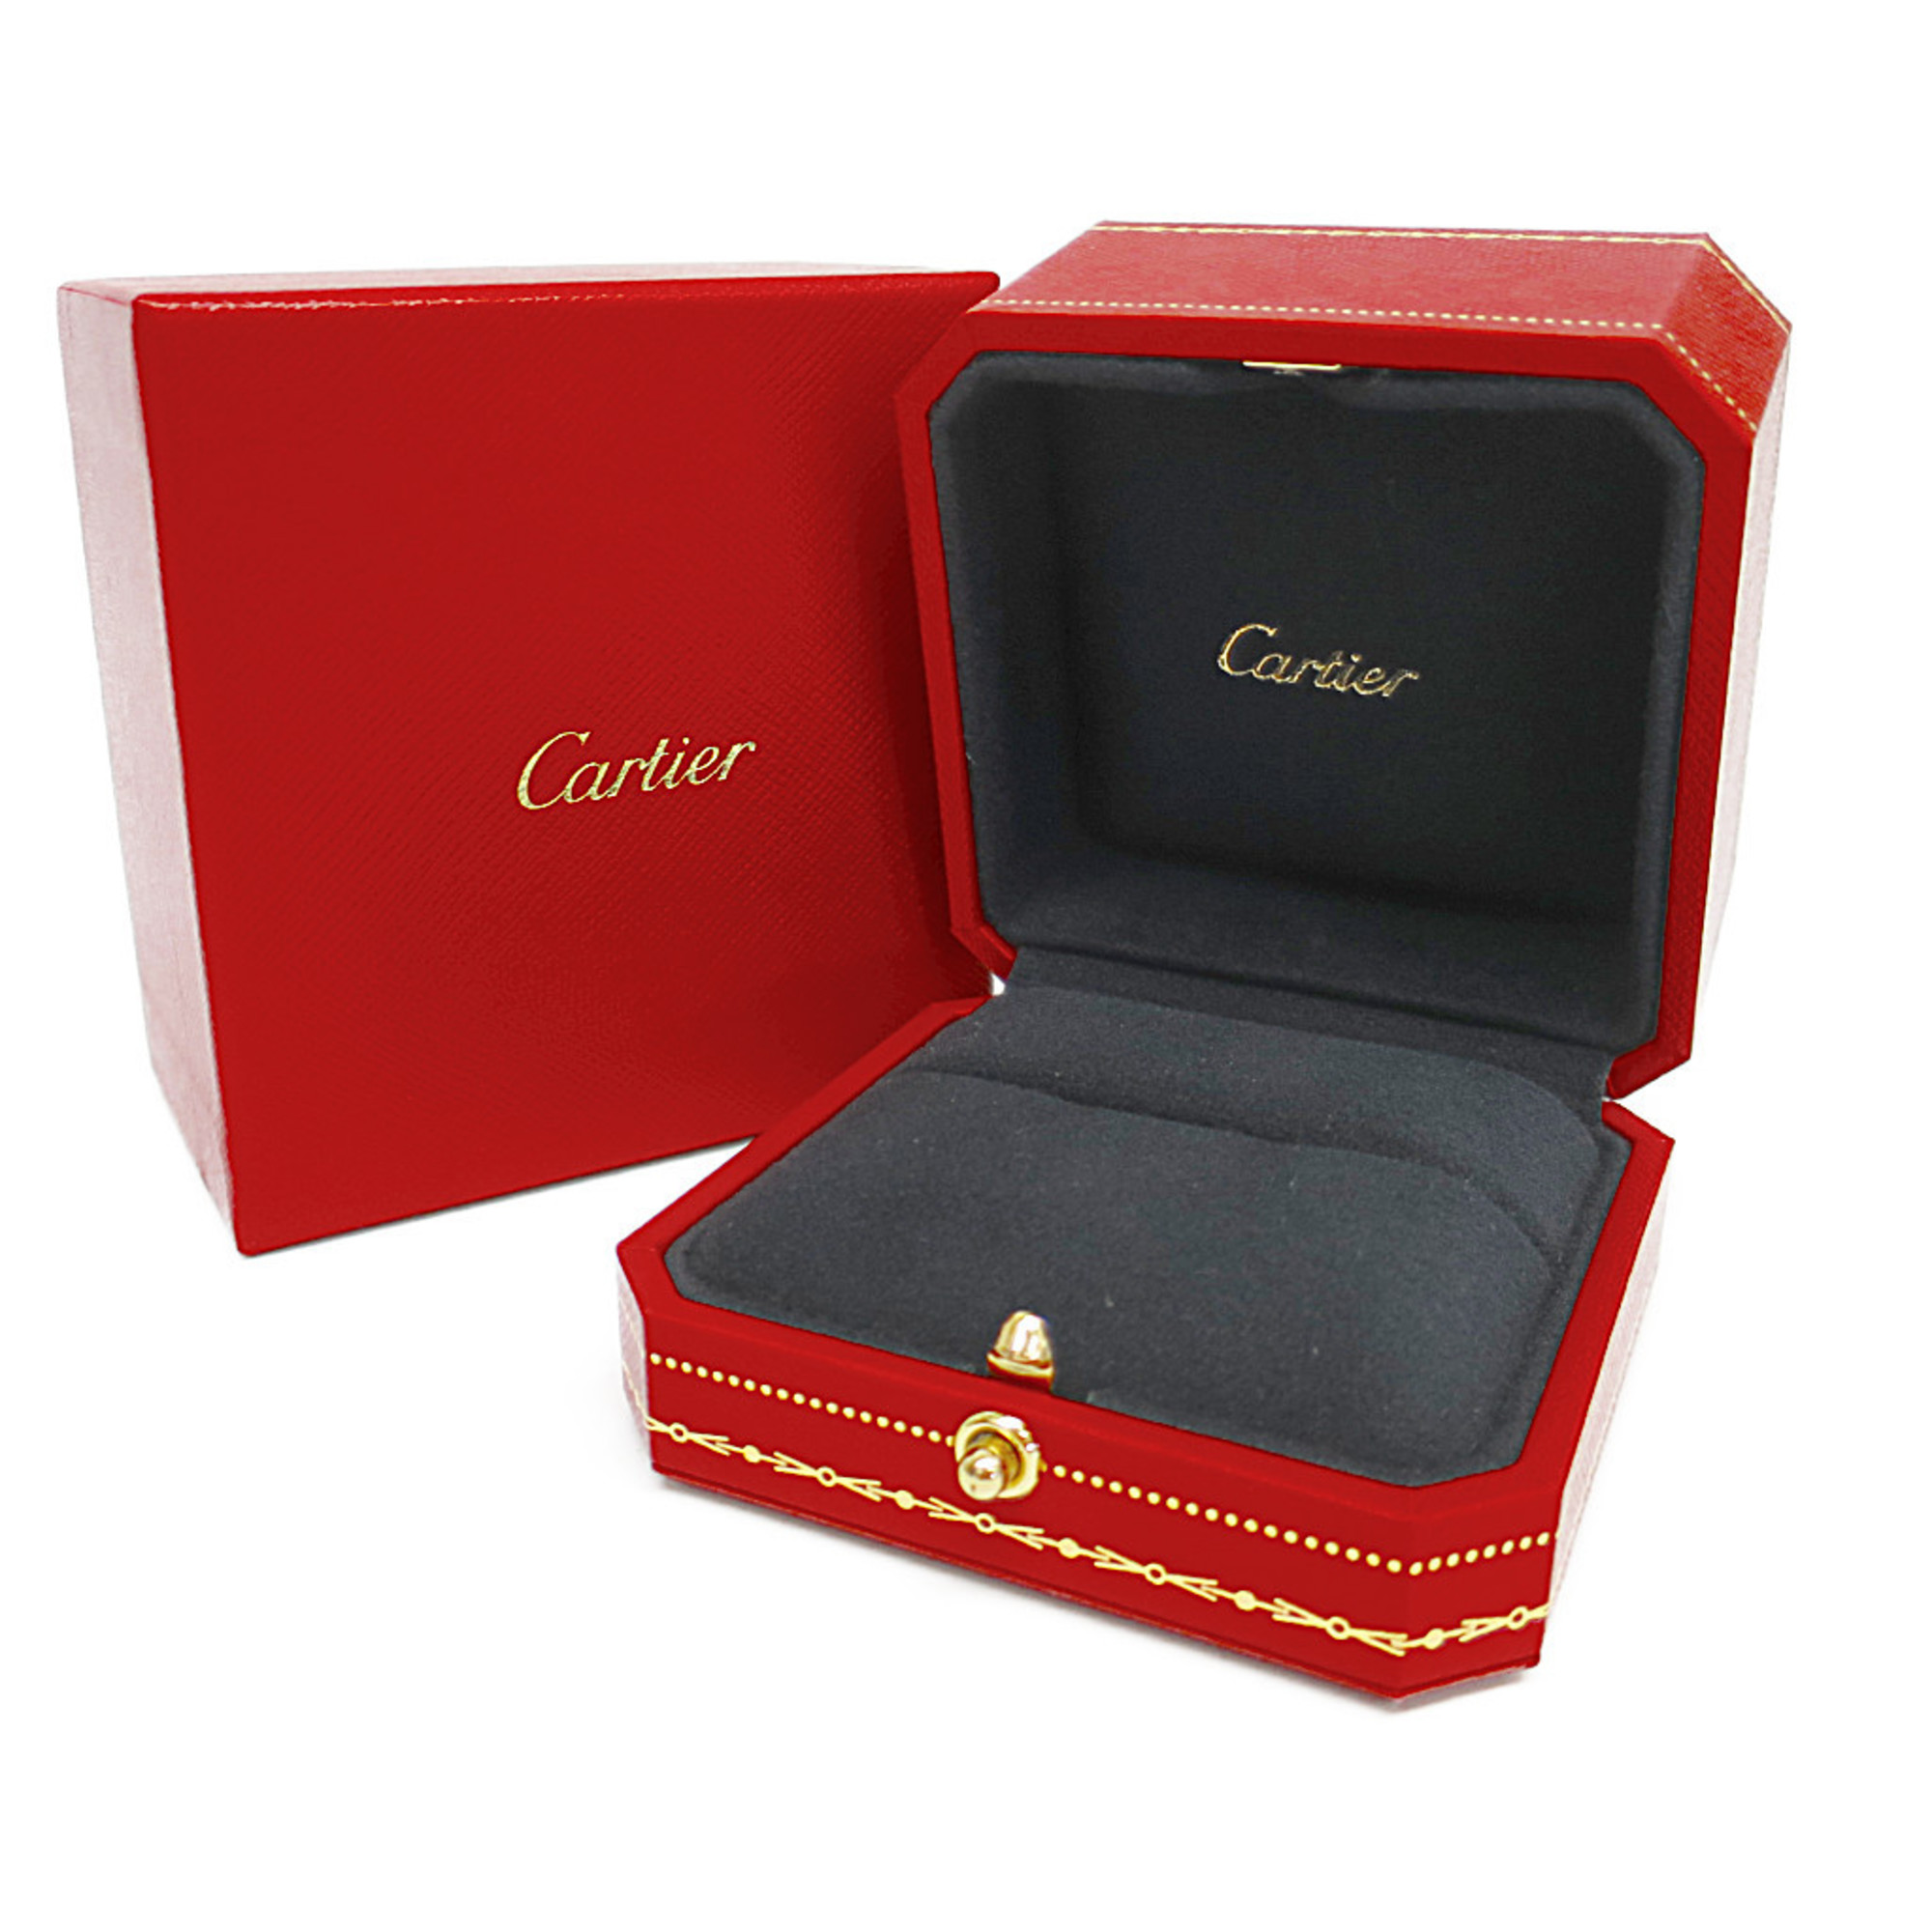 カルティエ(Cartier) マイヨン パンテール 4P ダイヤモンド リング K18ピンクゴールド(K18PG) ファッション ダイヤモンド バンドリング ピンクゴールド(PG)